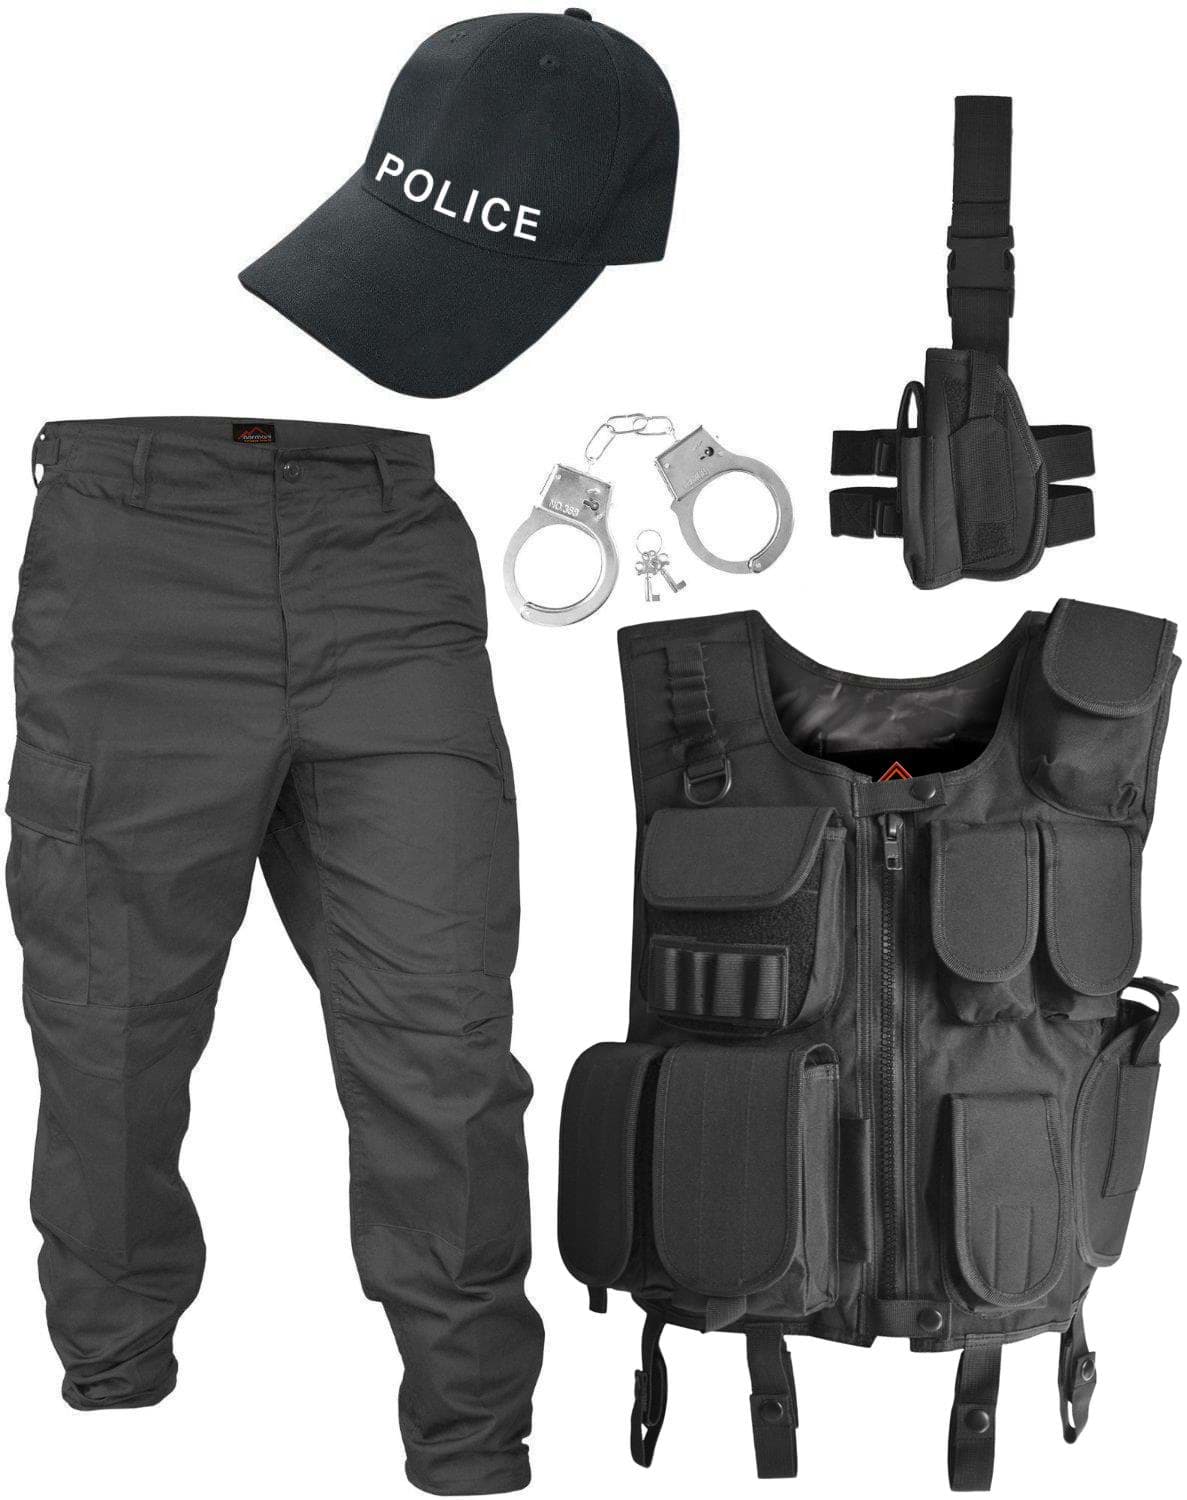 Kinder Faschingskostüm Polizist mit Swat-Weste & Ausrüstung in schwarz